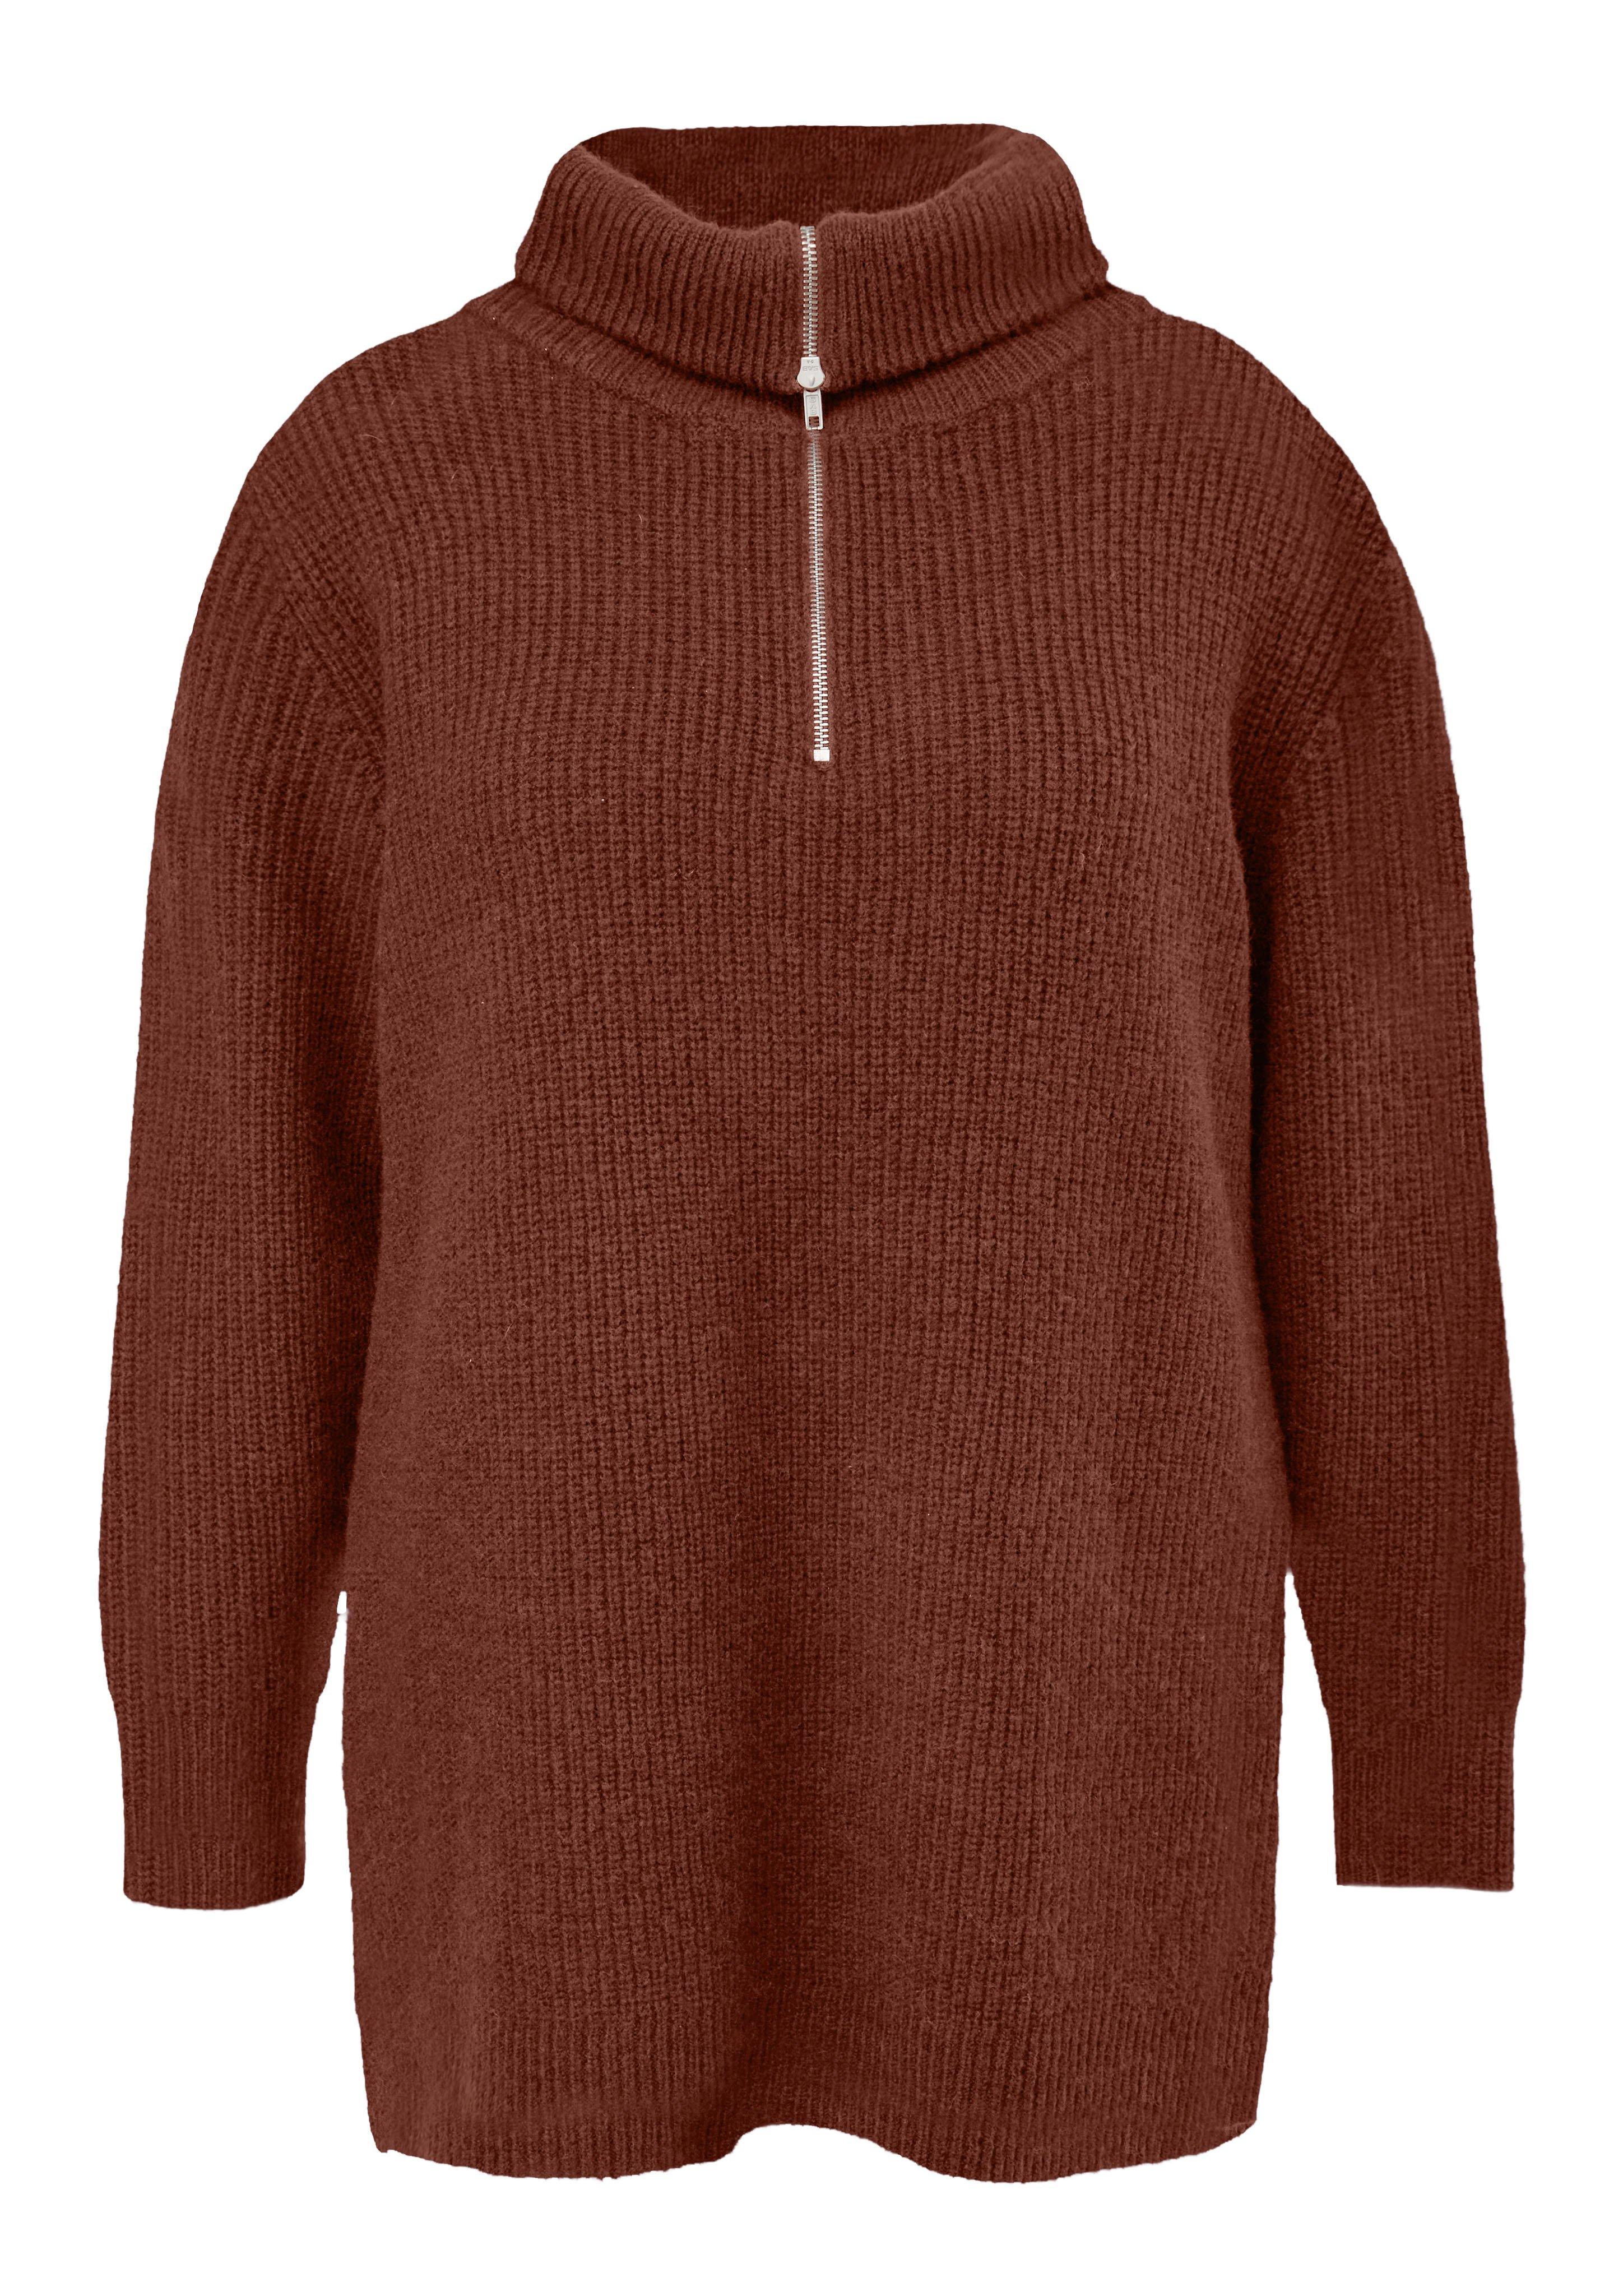 Große Größen: Kuscheliger Pullover mit Troyerkragen, rotbraun, Gr.44-54 product